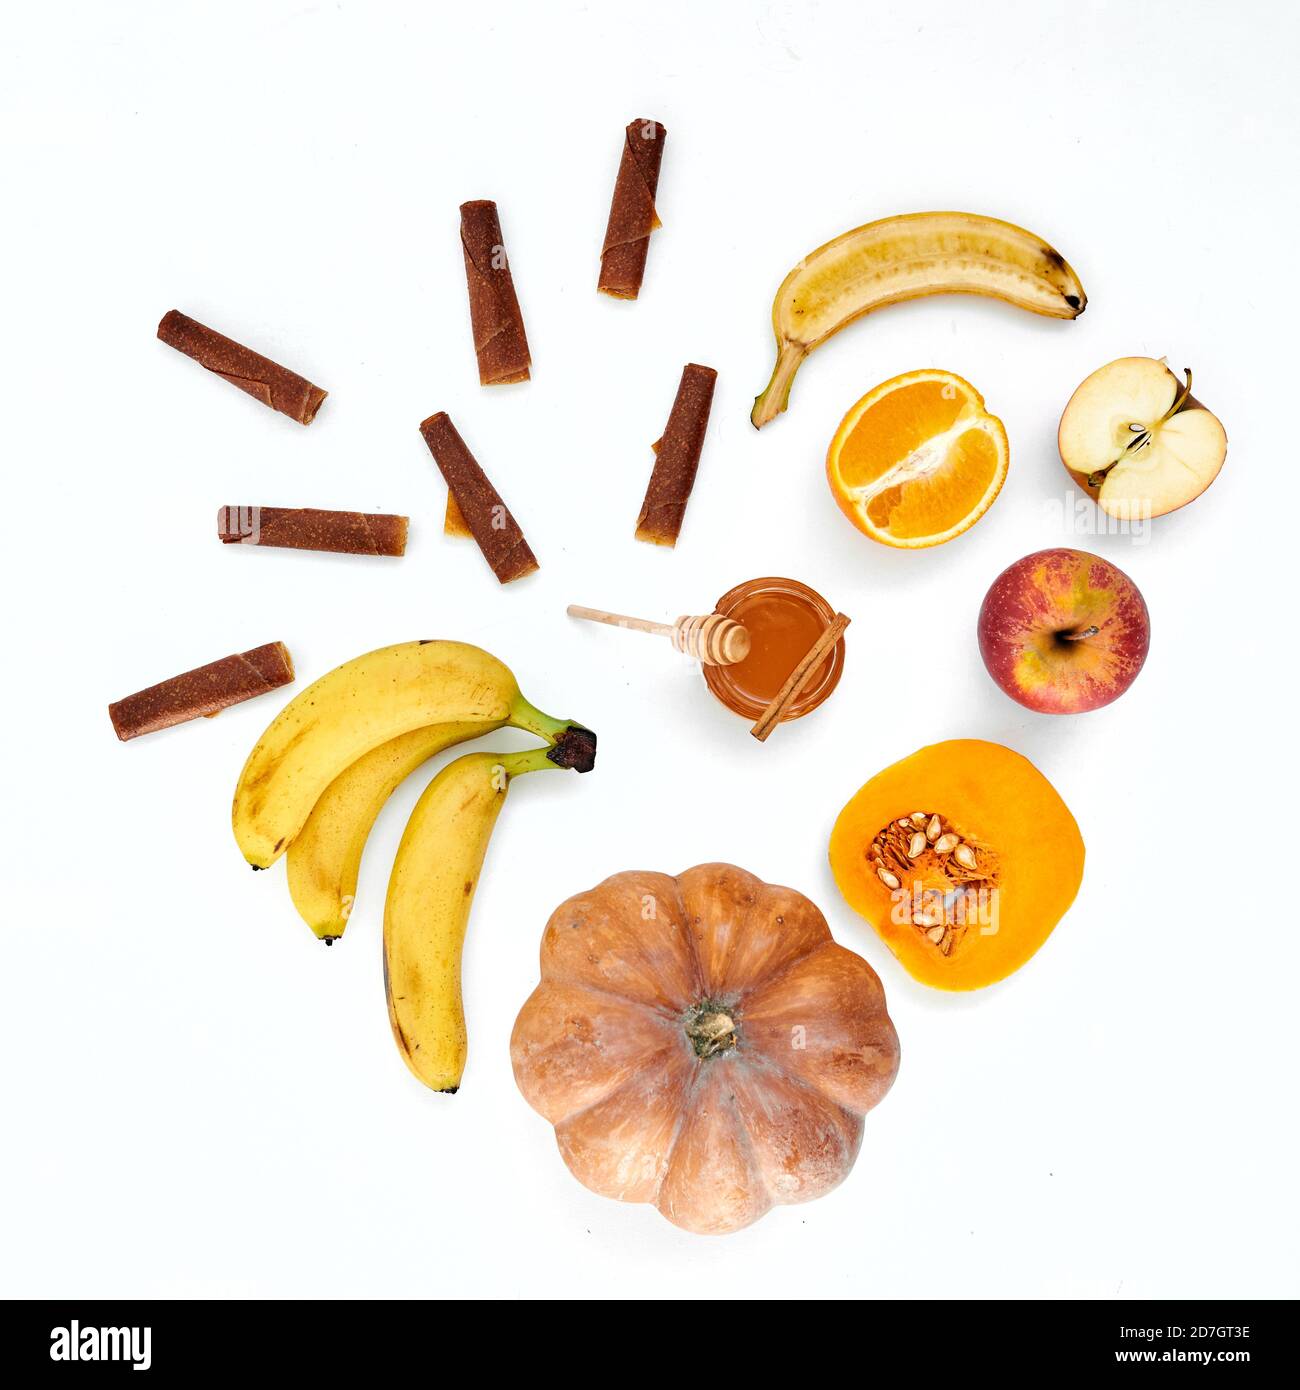 Flache Lage von verschiedenen getrockneten und frischen Früchten auf weißem Hintergrund. Früchte, Pastillen und Fruchtchips im kreativen Hintergrund. Stockfoto